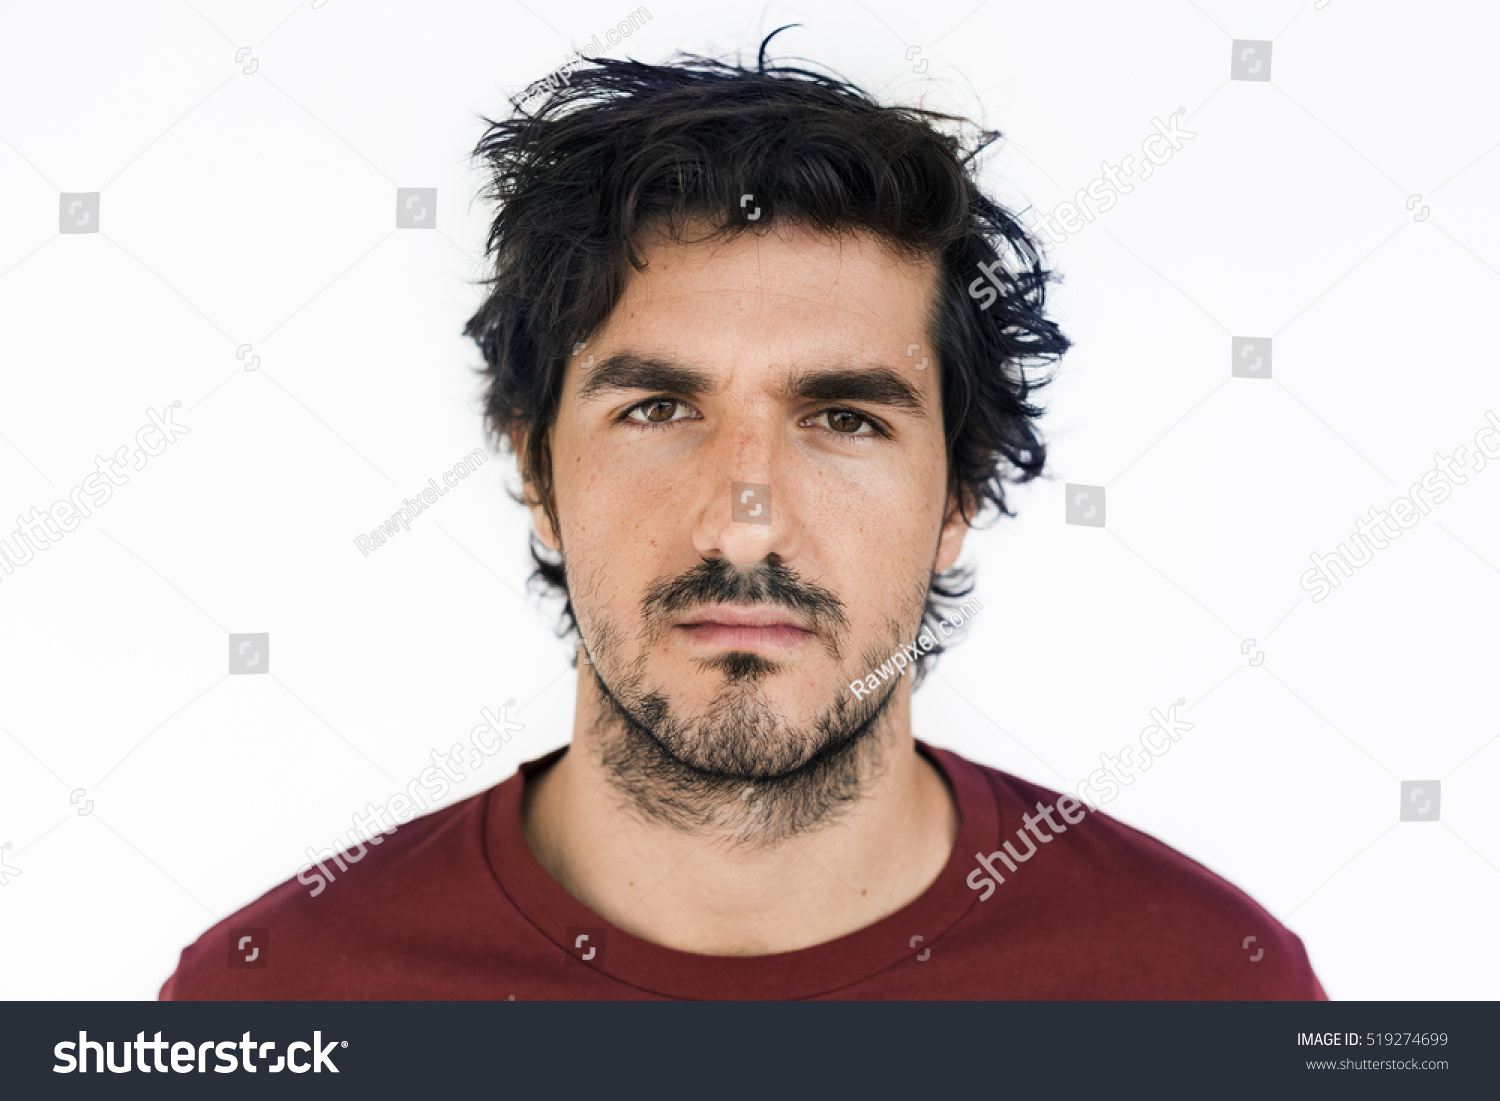 Man Male Person Portrait Casual Studio Concept #519274699